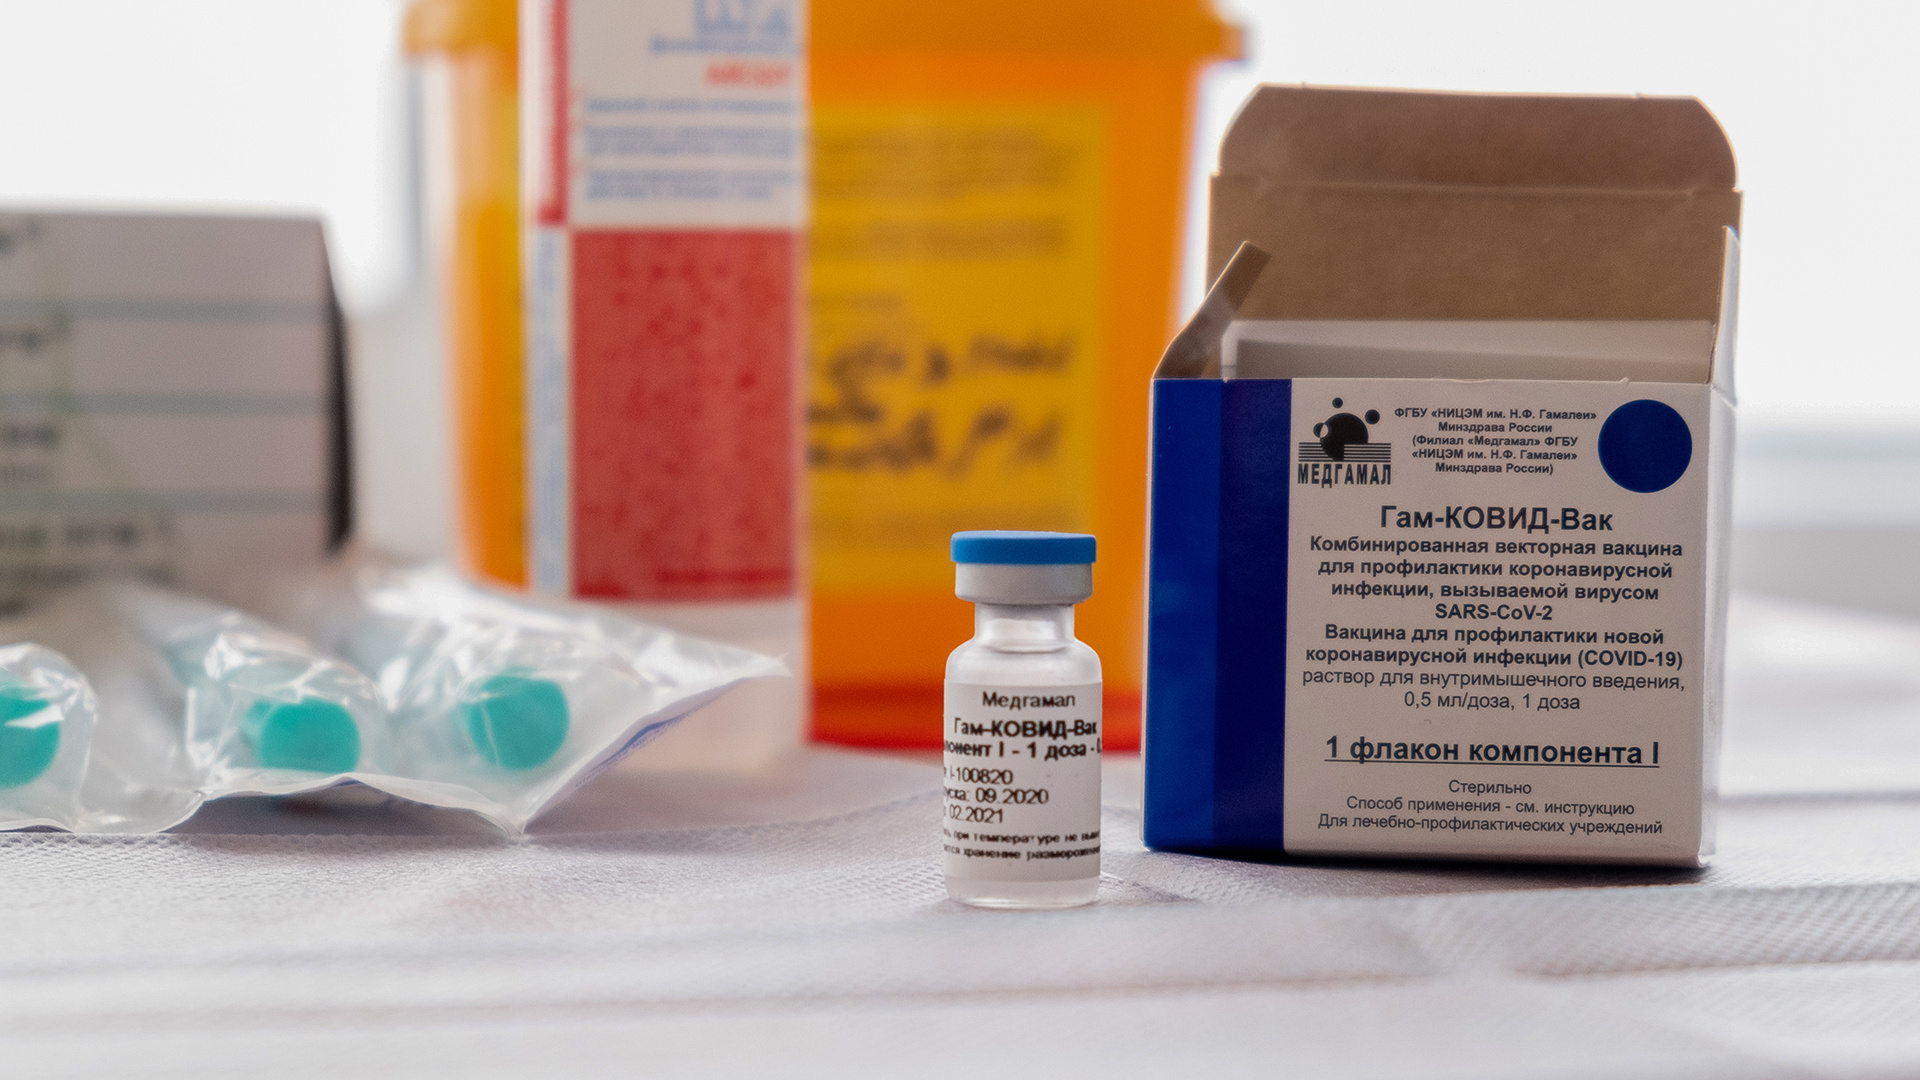 «Риск осложнений ниже, чем шанс попасть в ДТП»: врач из Кемерово — о том, почему поставил прививку от COVID